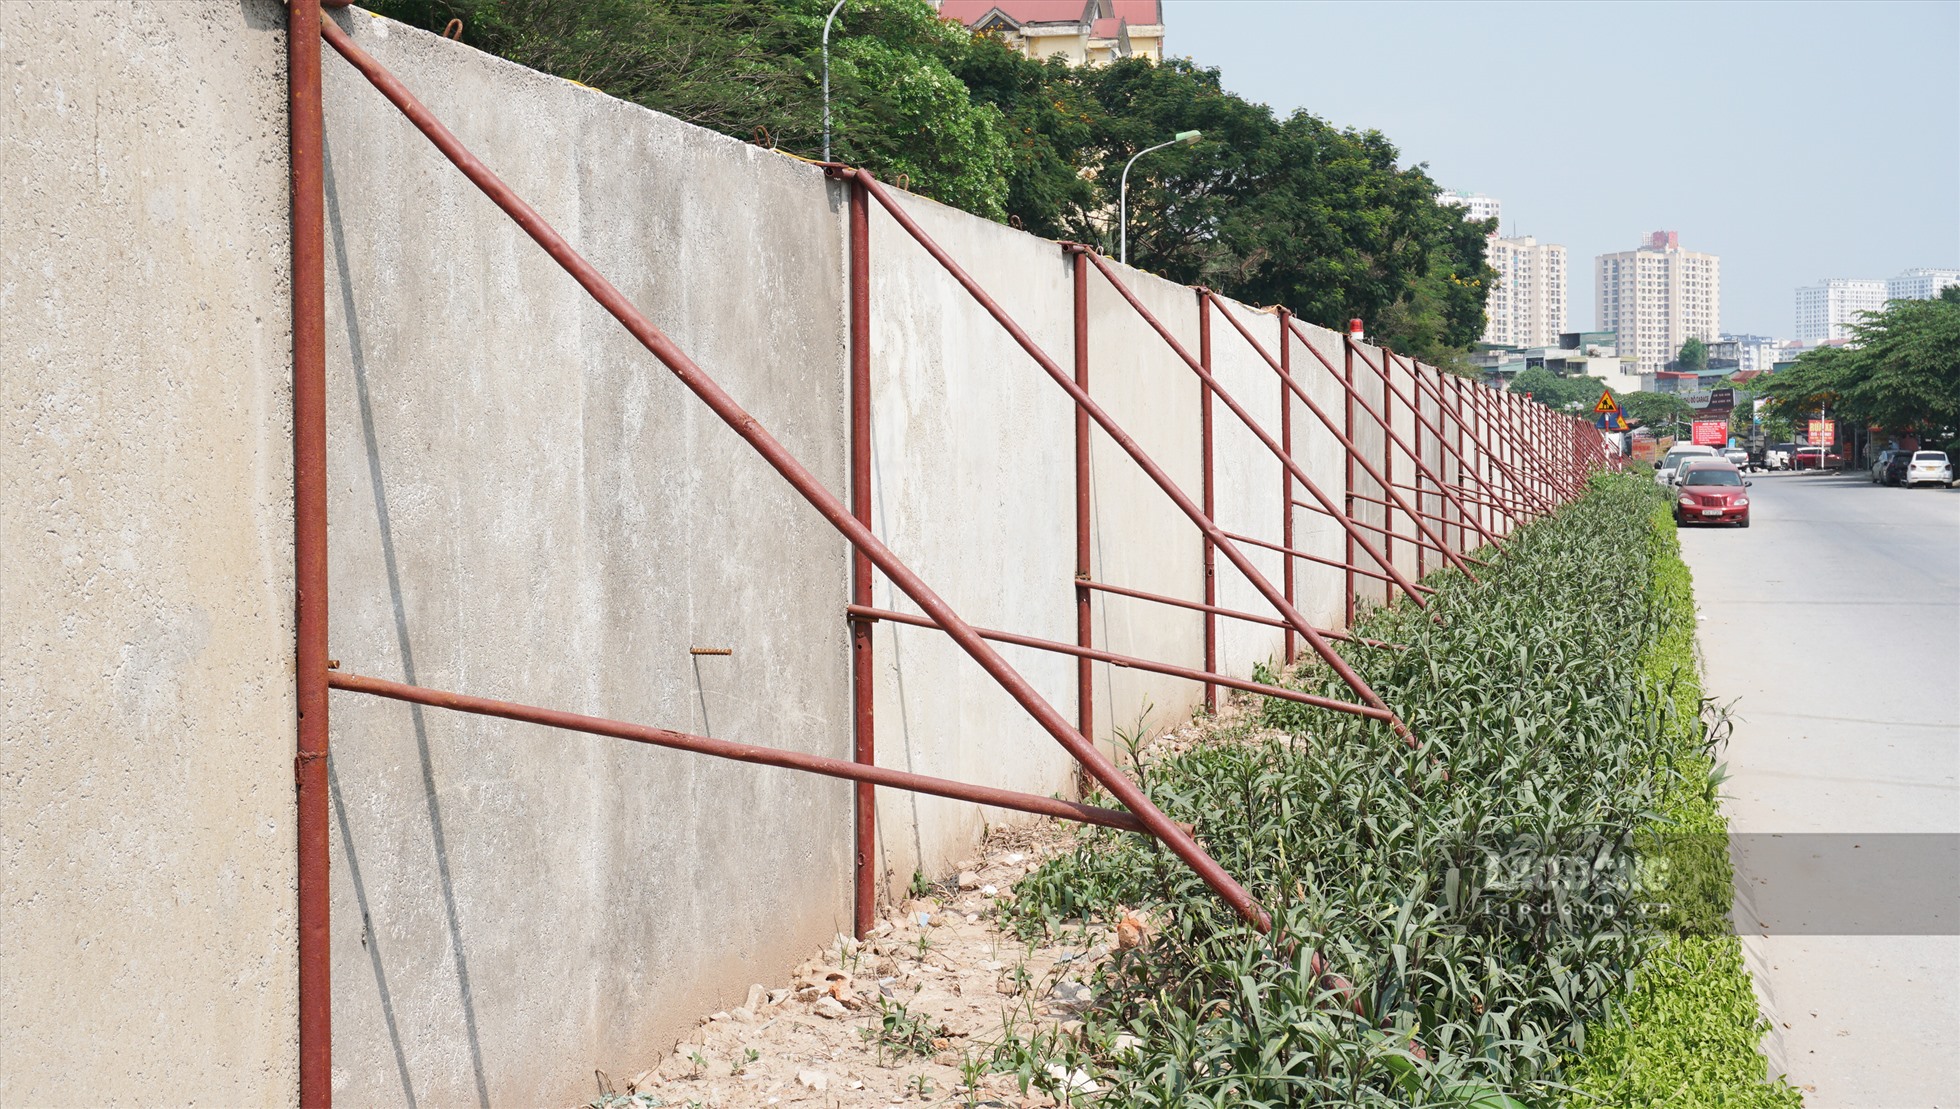 Dải phân cách giữa đường bằng cây xanh cũng bị những chiếc cọc sắt chống tường bê tông xâm phạm nghiêm trọng.